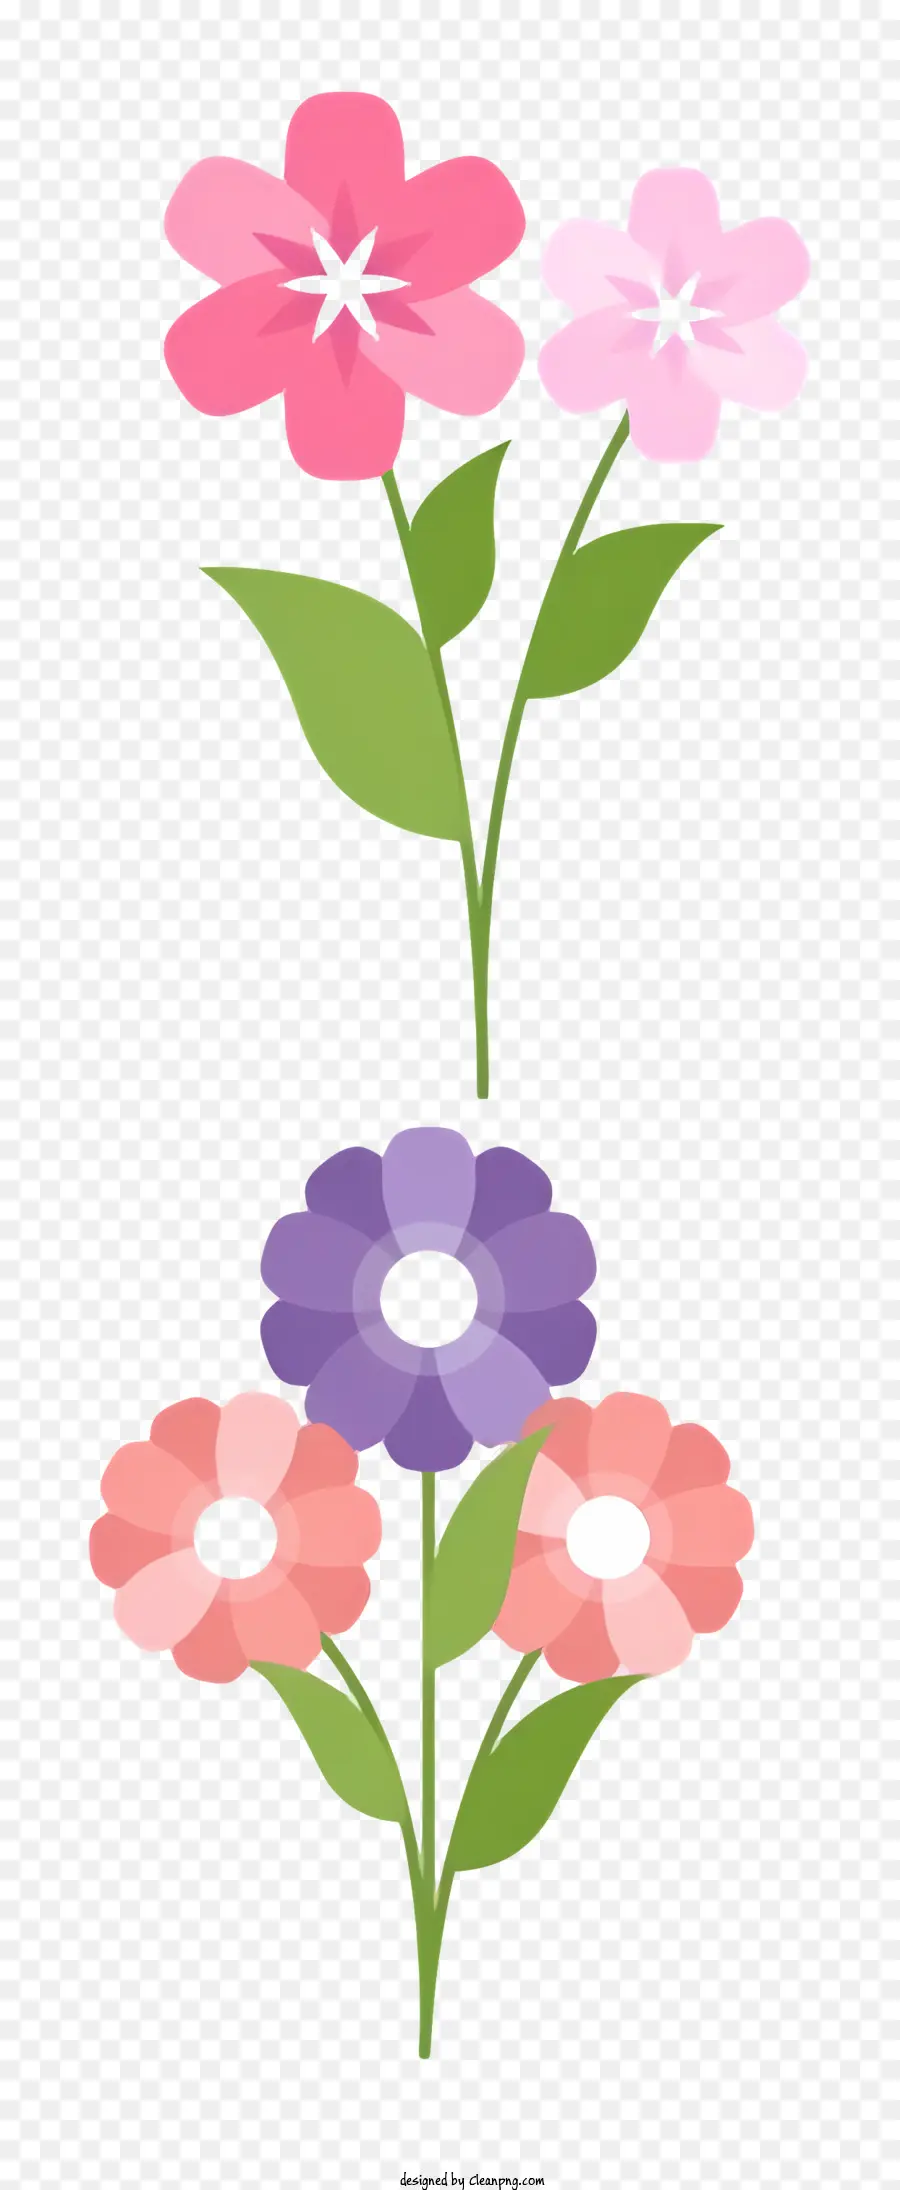 florales Design - Blume mit flachen Stil mit rosa und lila Blütenblättern